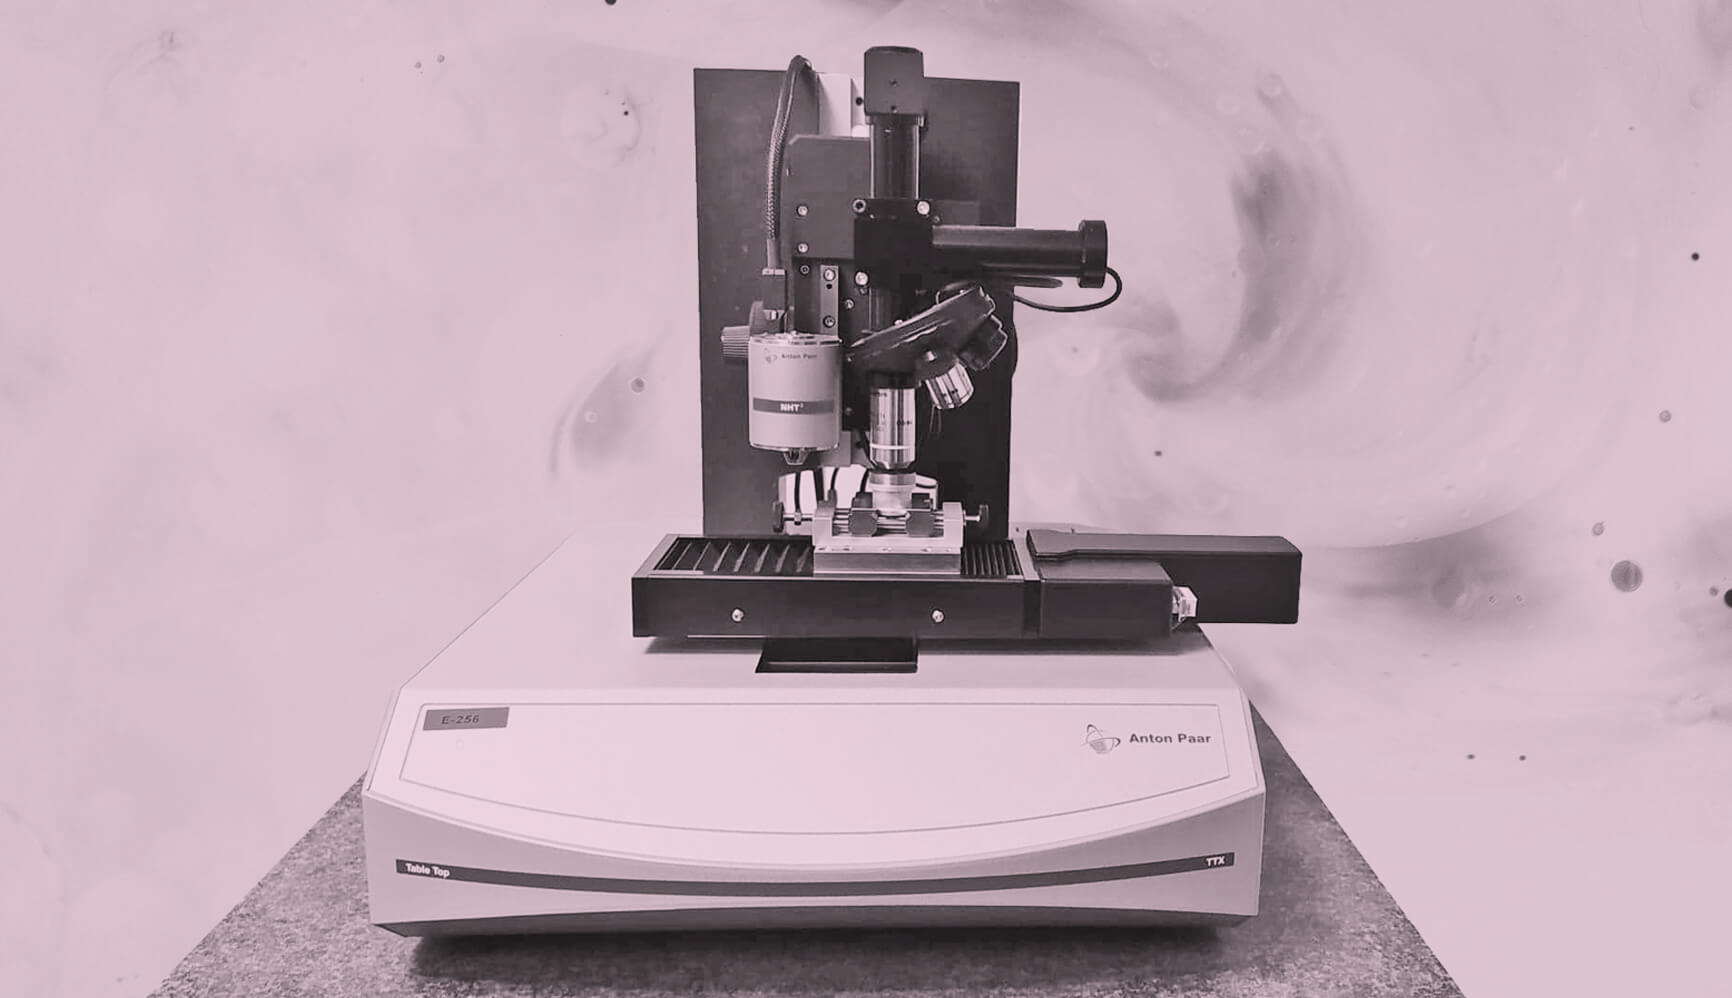 Test de dureté en laboratoire, mesure de macro-dureté, micro-dureté et nano-indentation : Vickers, Knoop, Brinell, Rockwell, Shore.